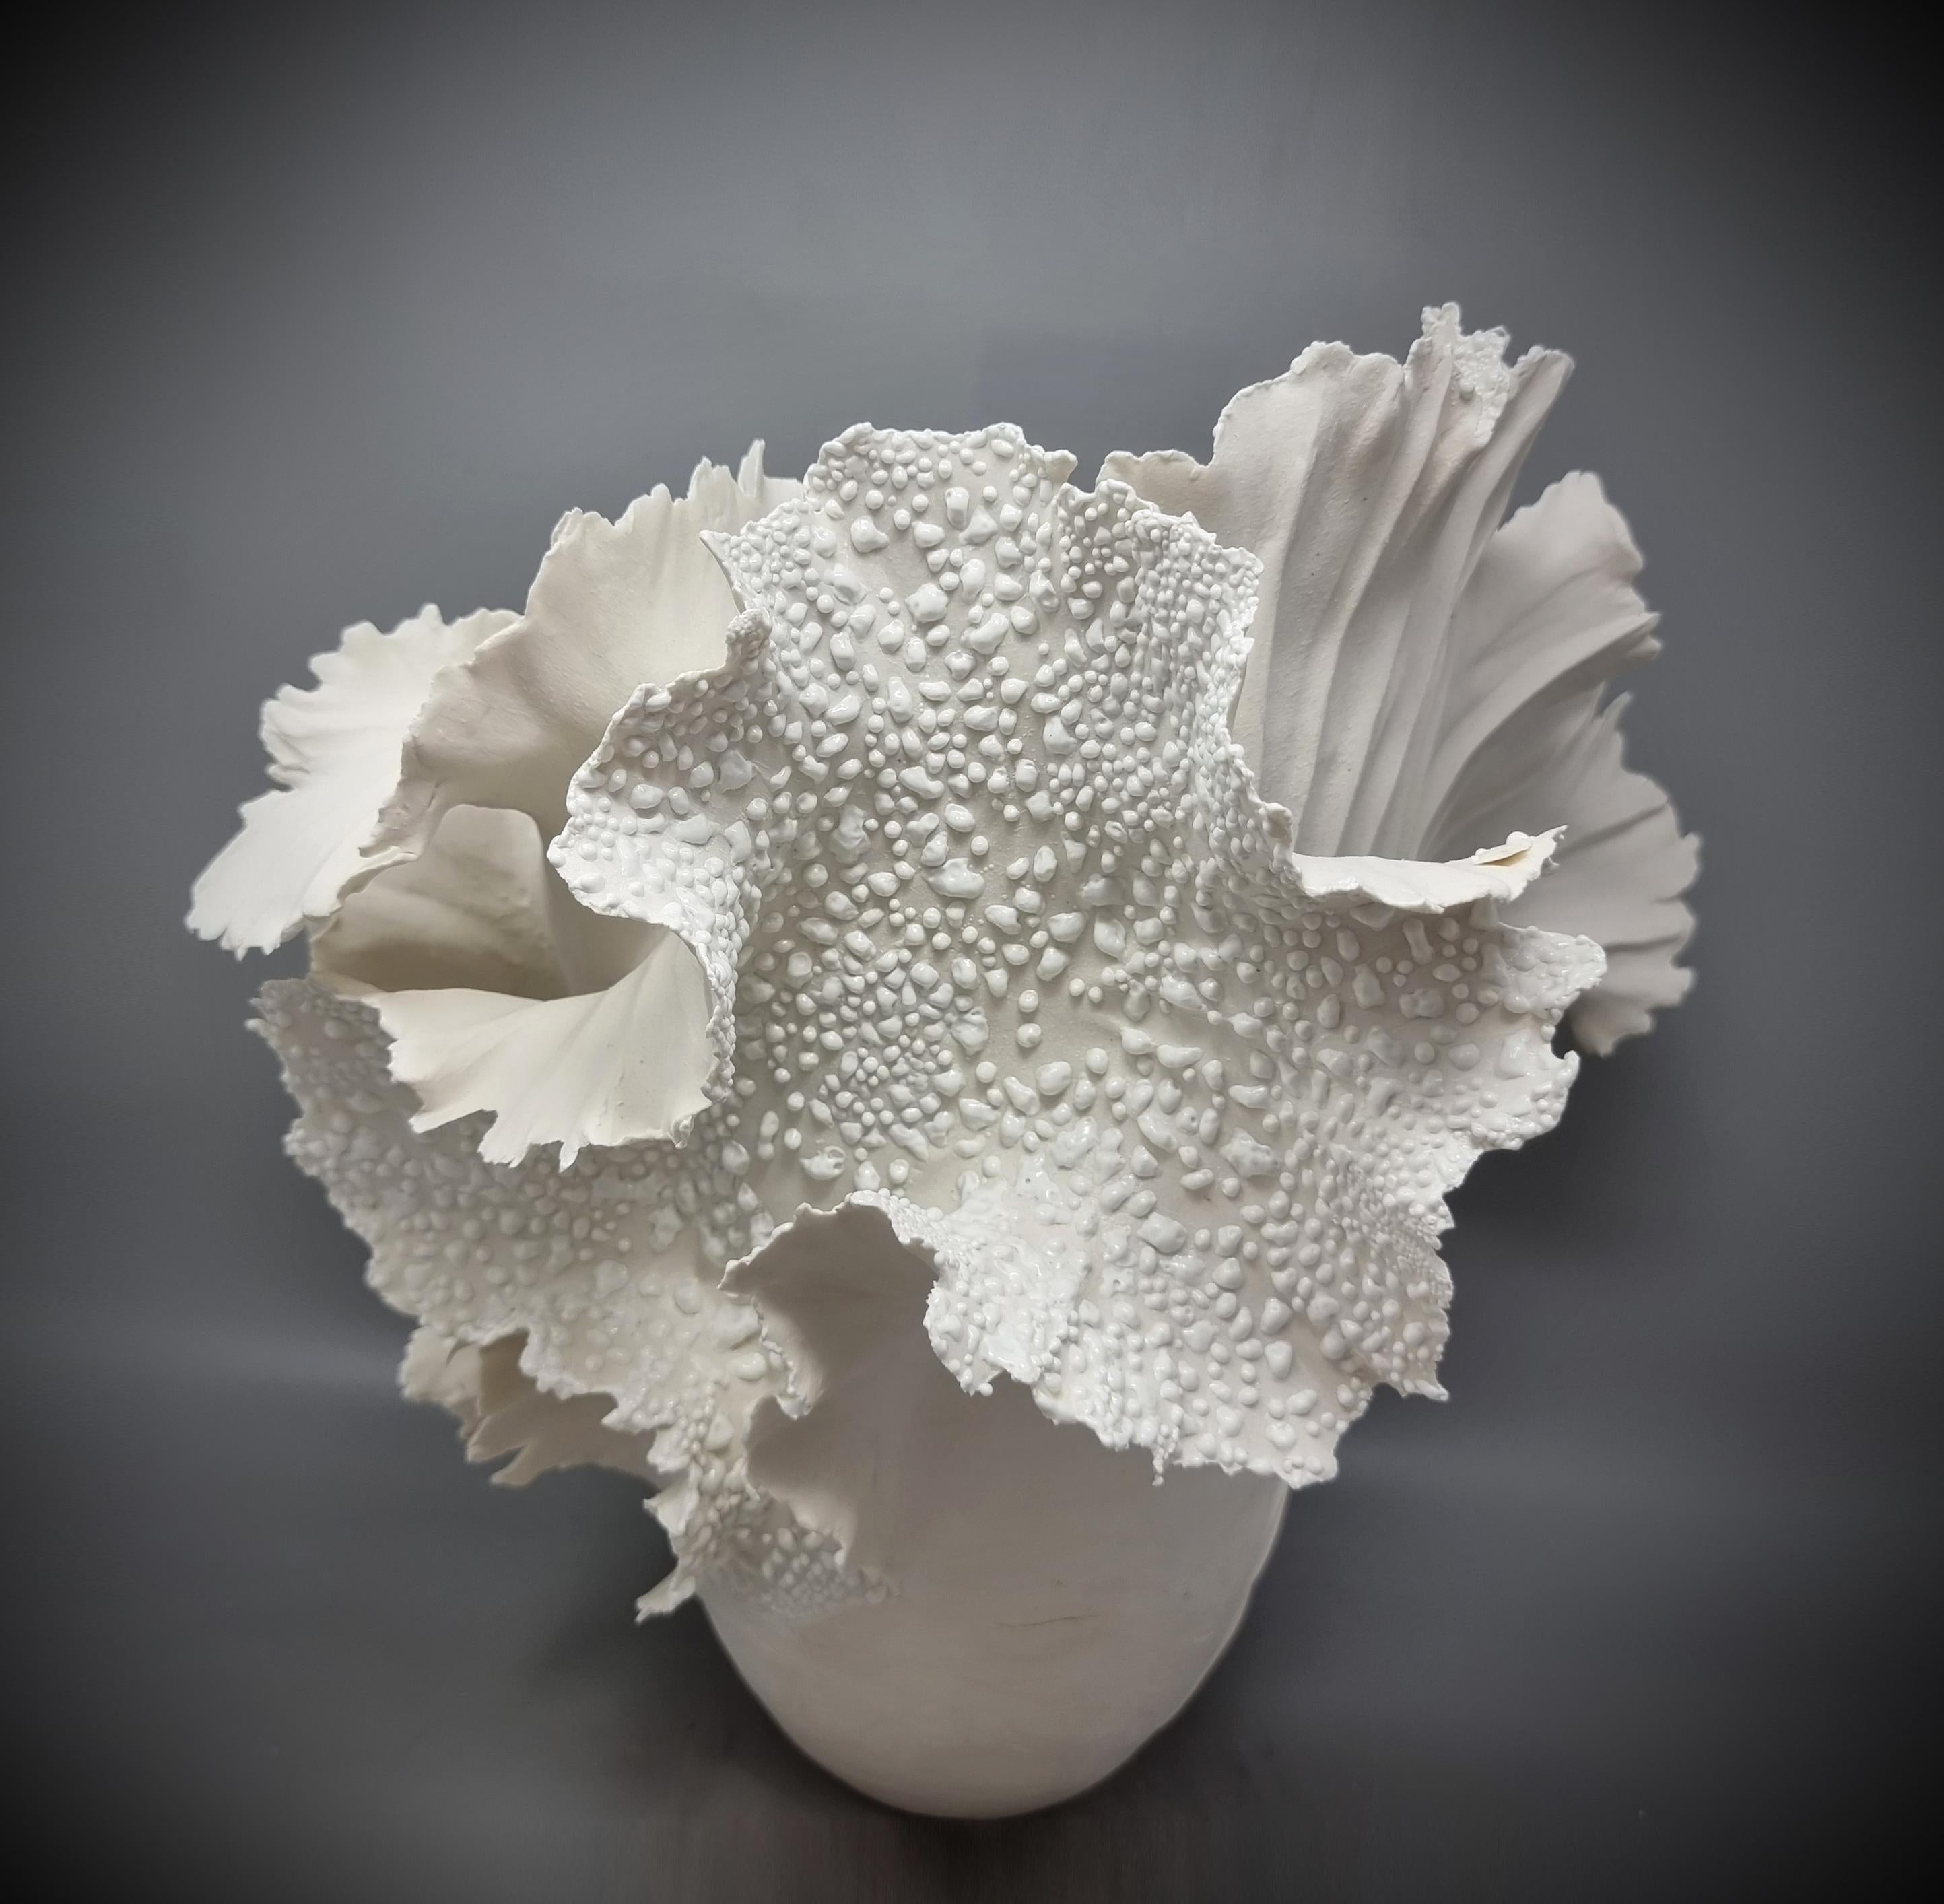 Contemporary Wave Sculpture, Paperporcelain // 177